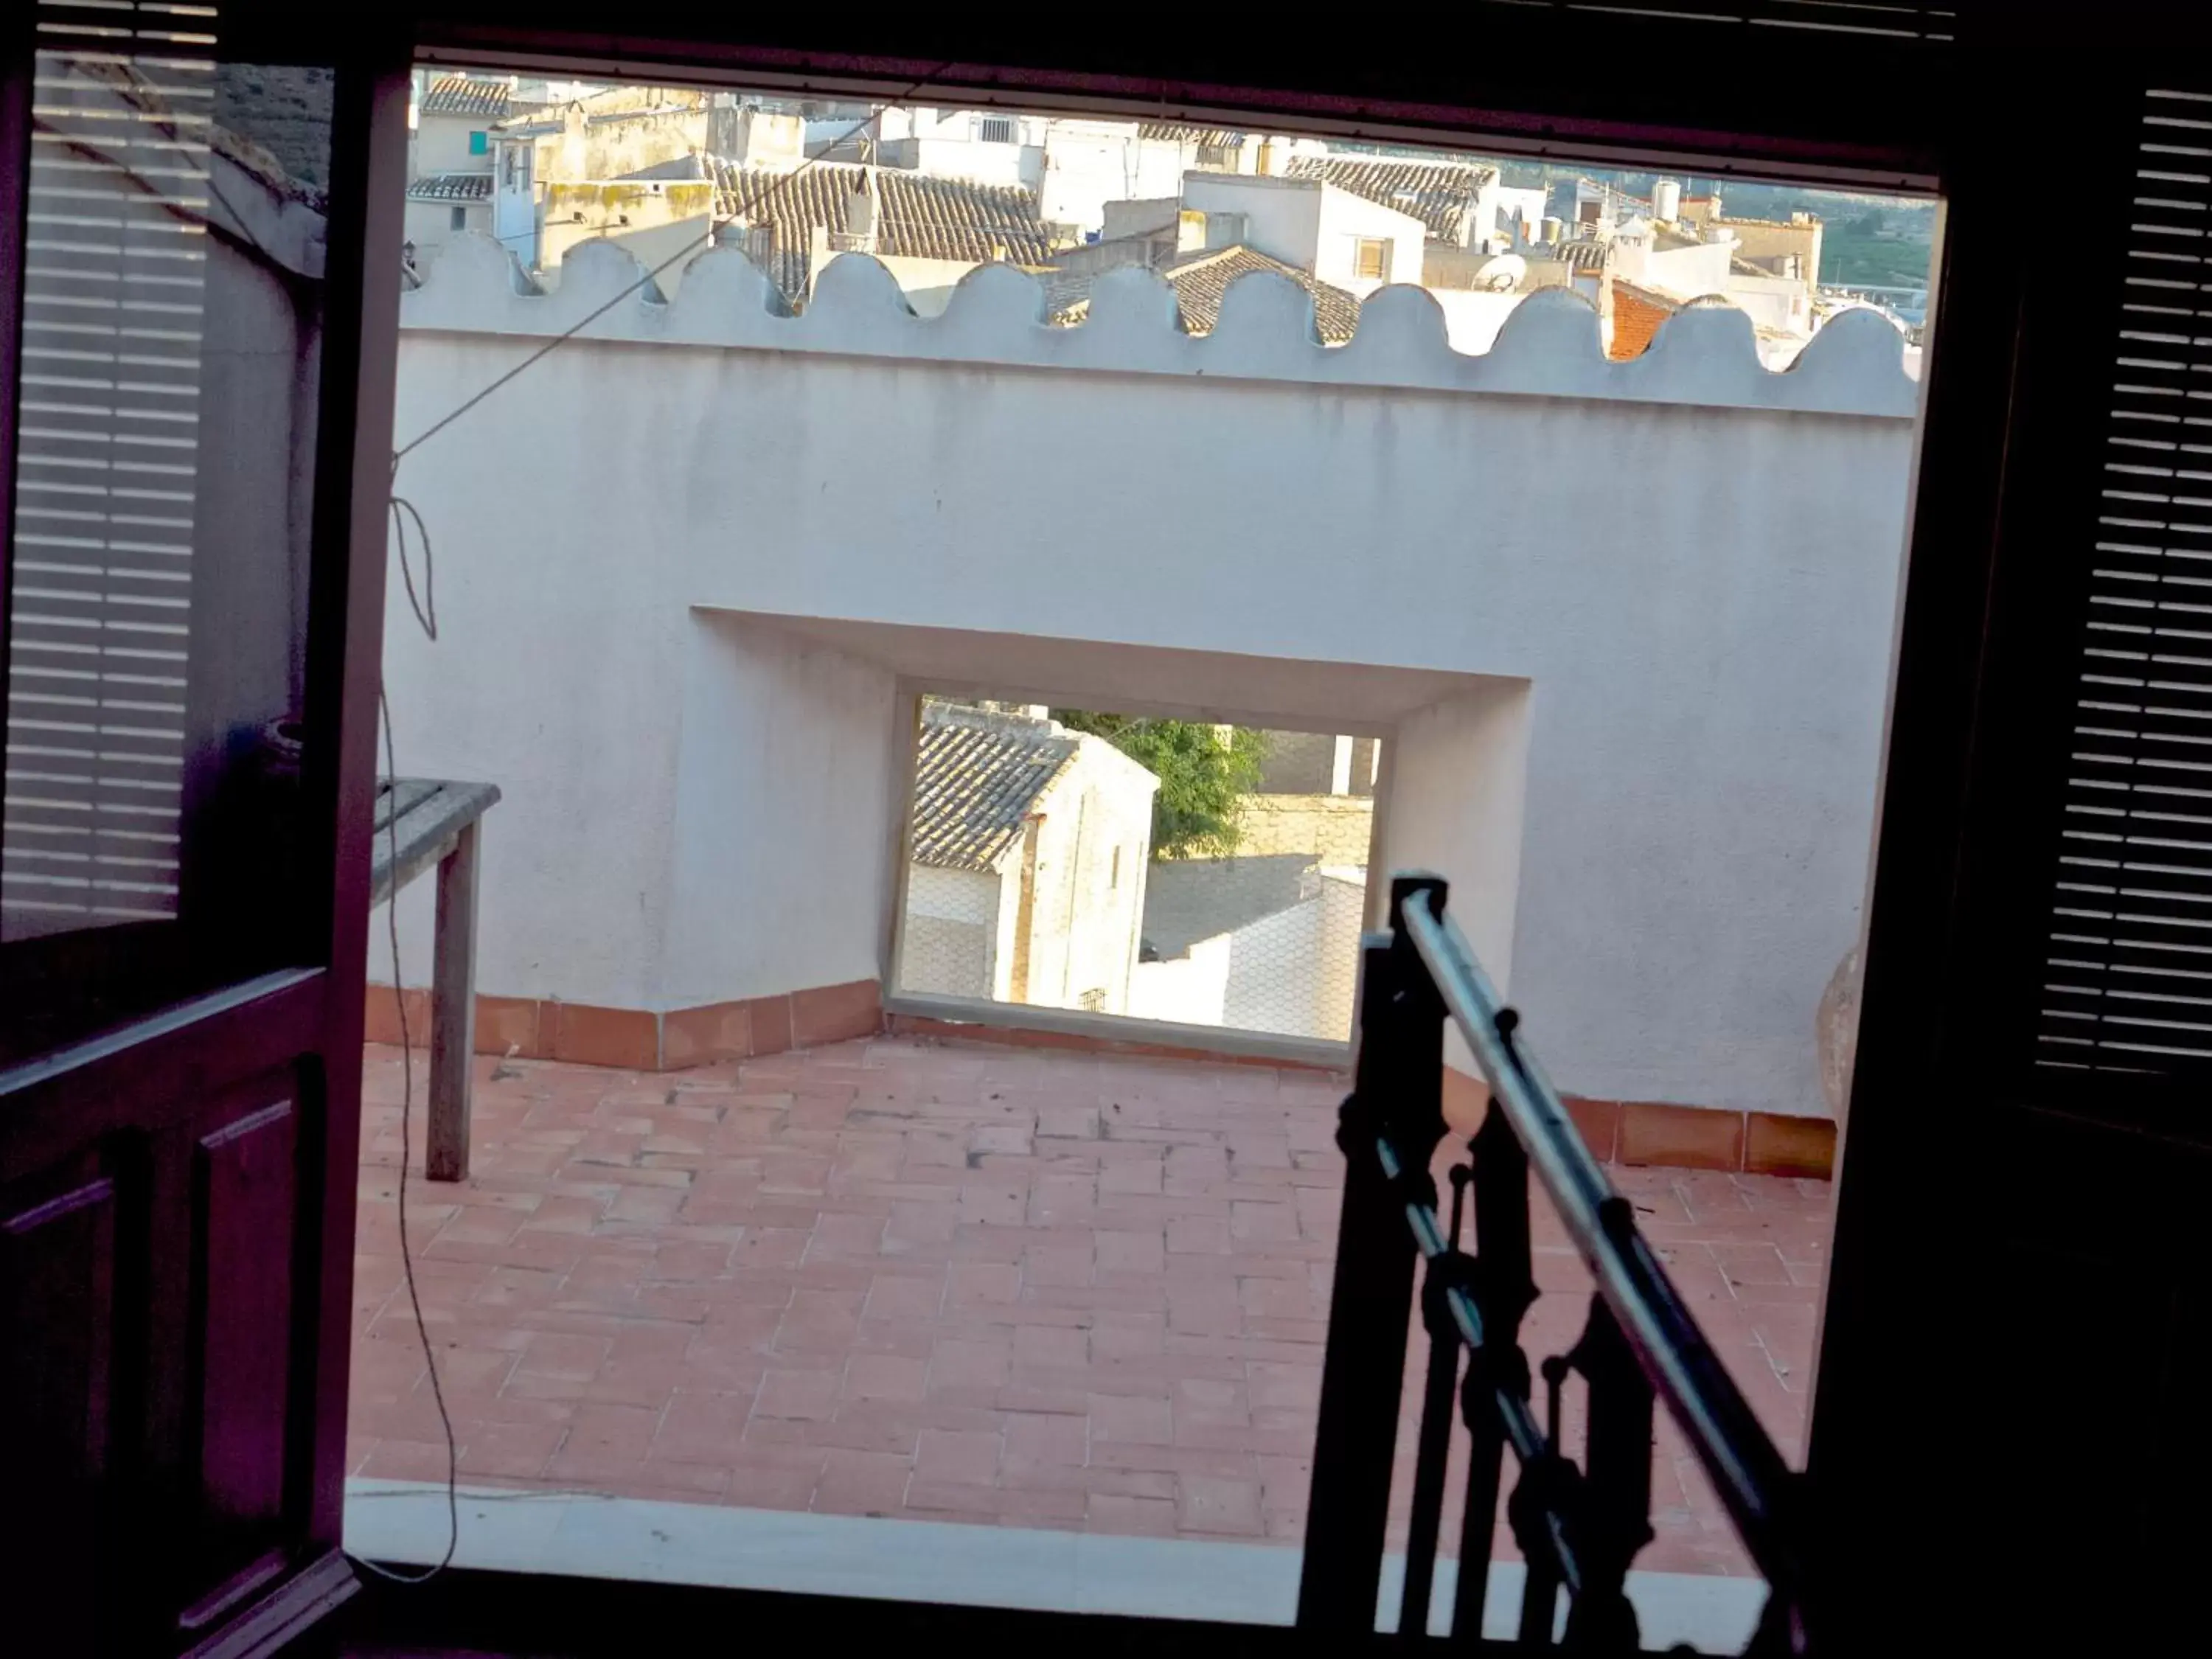 Balcony/Terrace in Olmitos 3 Hotel boutique, Casa-Palacio